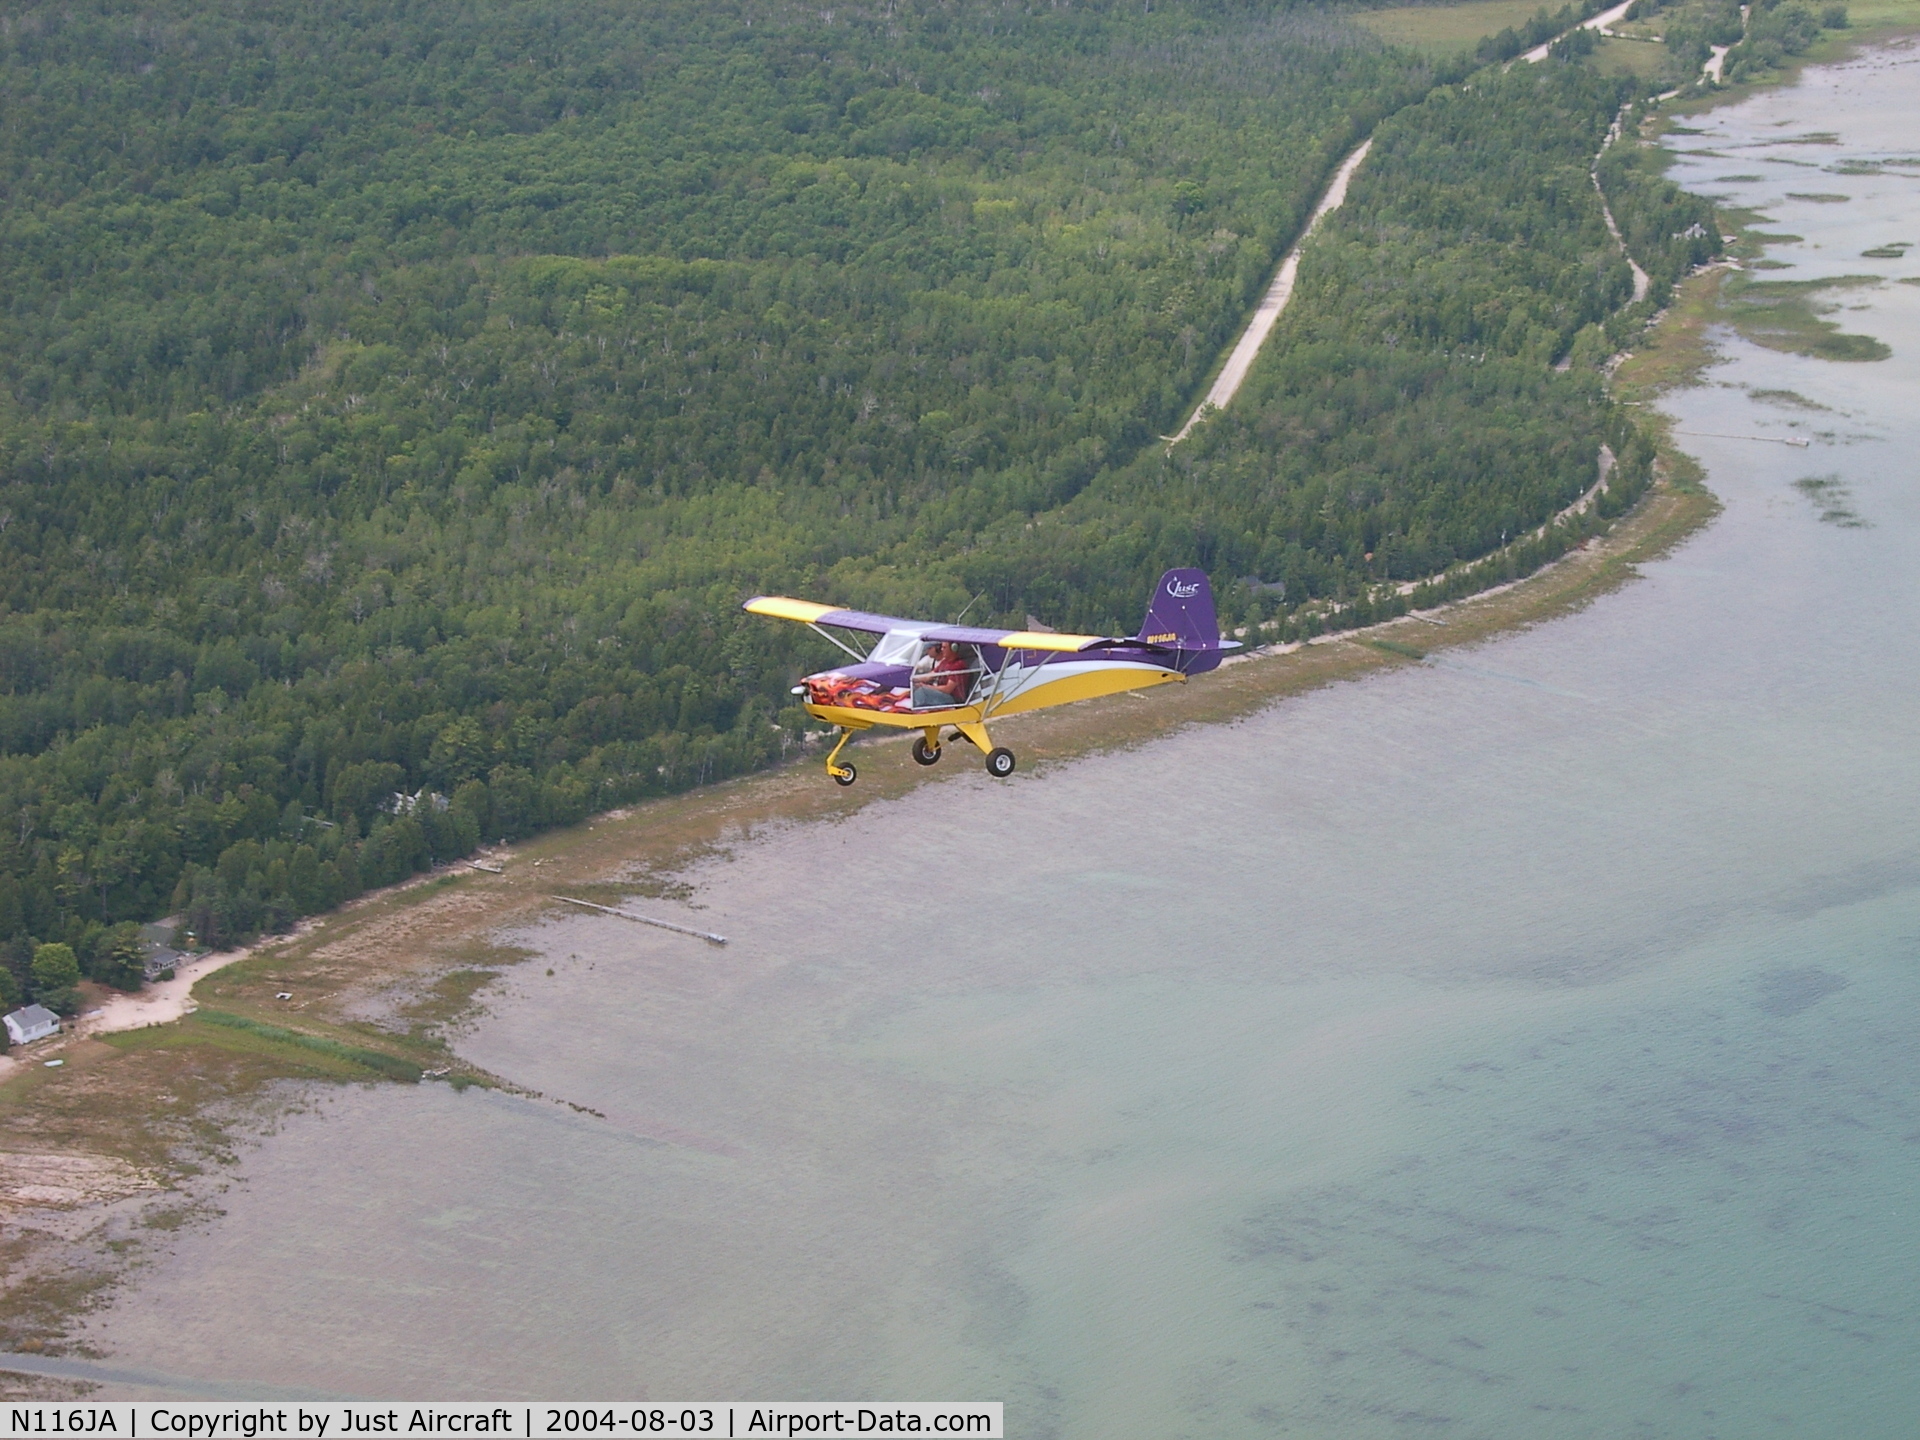 N116JA, 2003 Just Aircraft Escapade C/N JAESC0001, Just Aircraft Escapade flying along the Lake Michigan shoreline